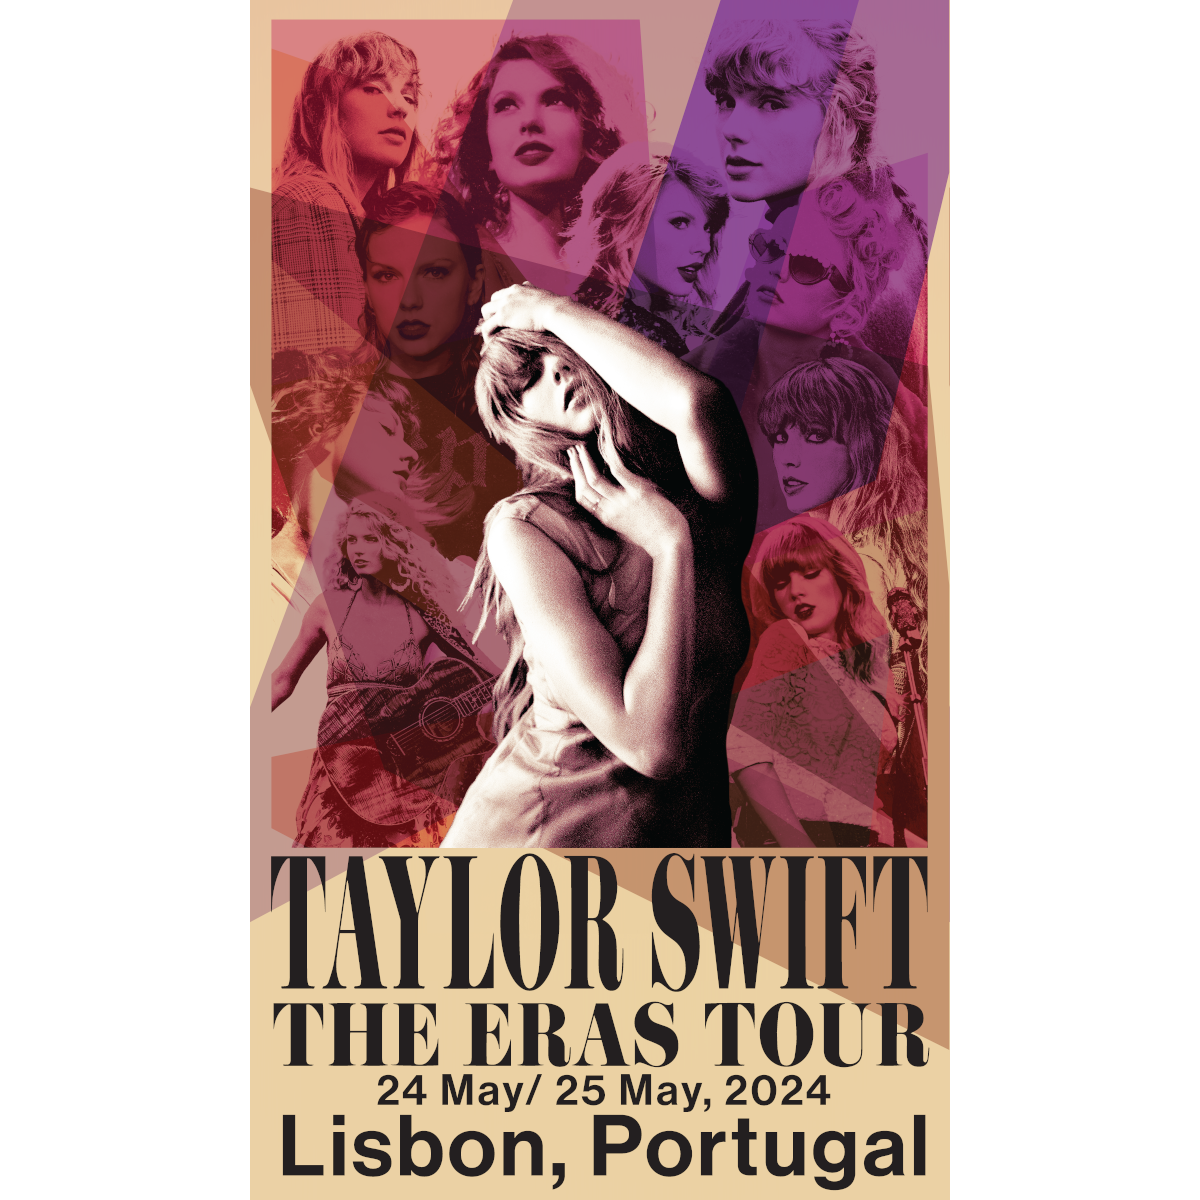 https://images.bravado.de/prod/product-assets/product-asset-data/taylor-swift/taylor-swift/products/507927/web/445329/image-thumb__445329__3000x3000_original/Taylor-Swift-Taylor-Swift-The-Eras-Tour-Lisbon-Portugal-Poster-Poster-mehrfarbig-507927-445329.56e232ec.png